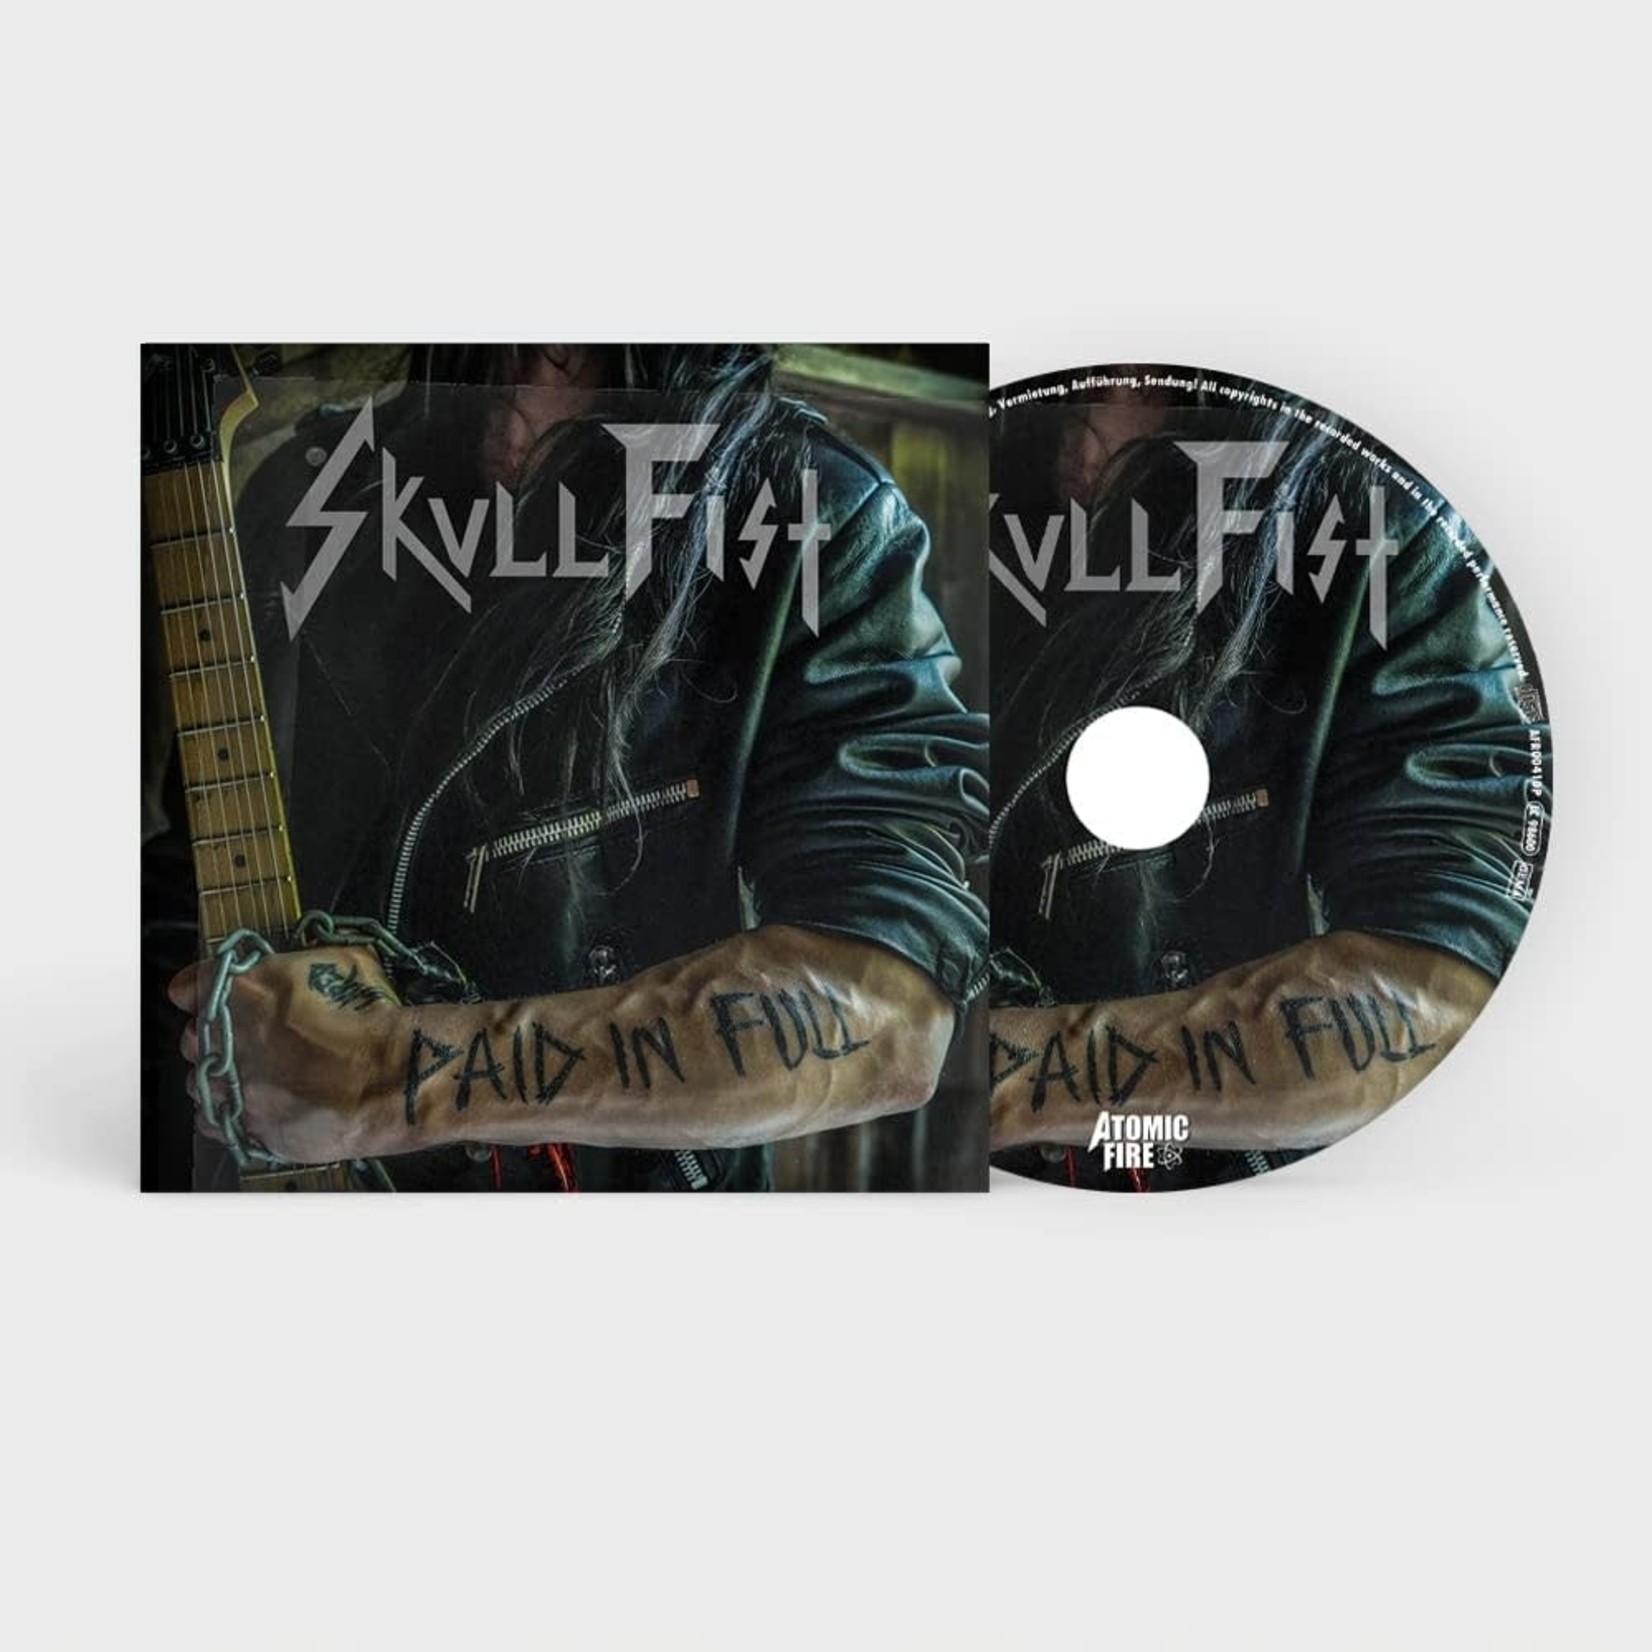 Skull Fist - Paid In Full [CD]